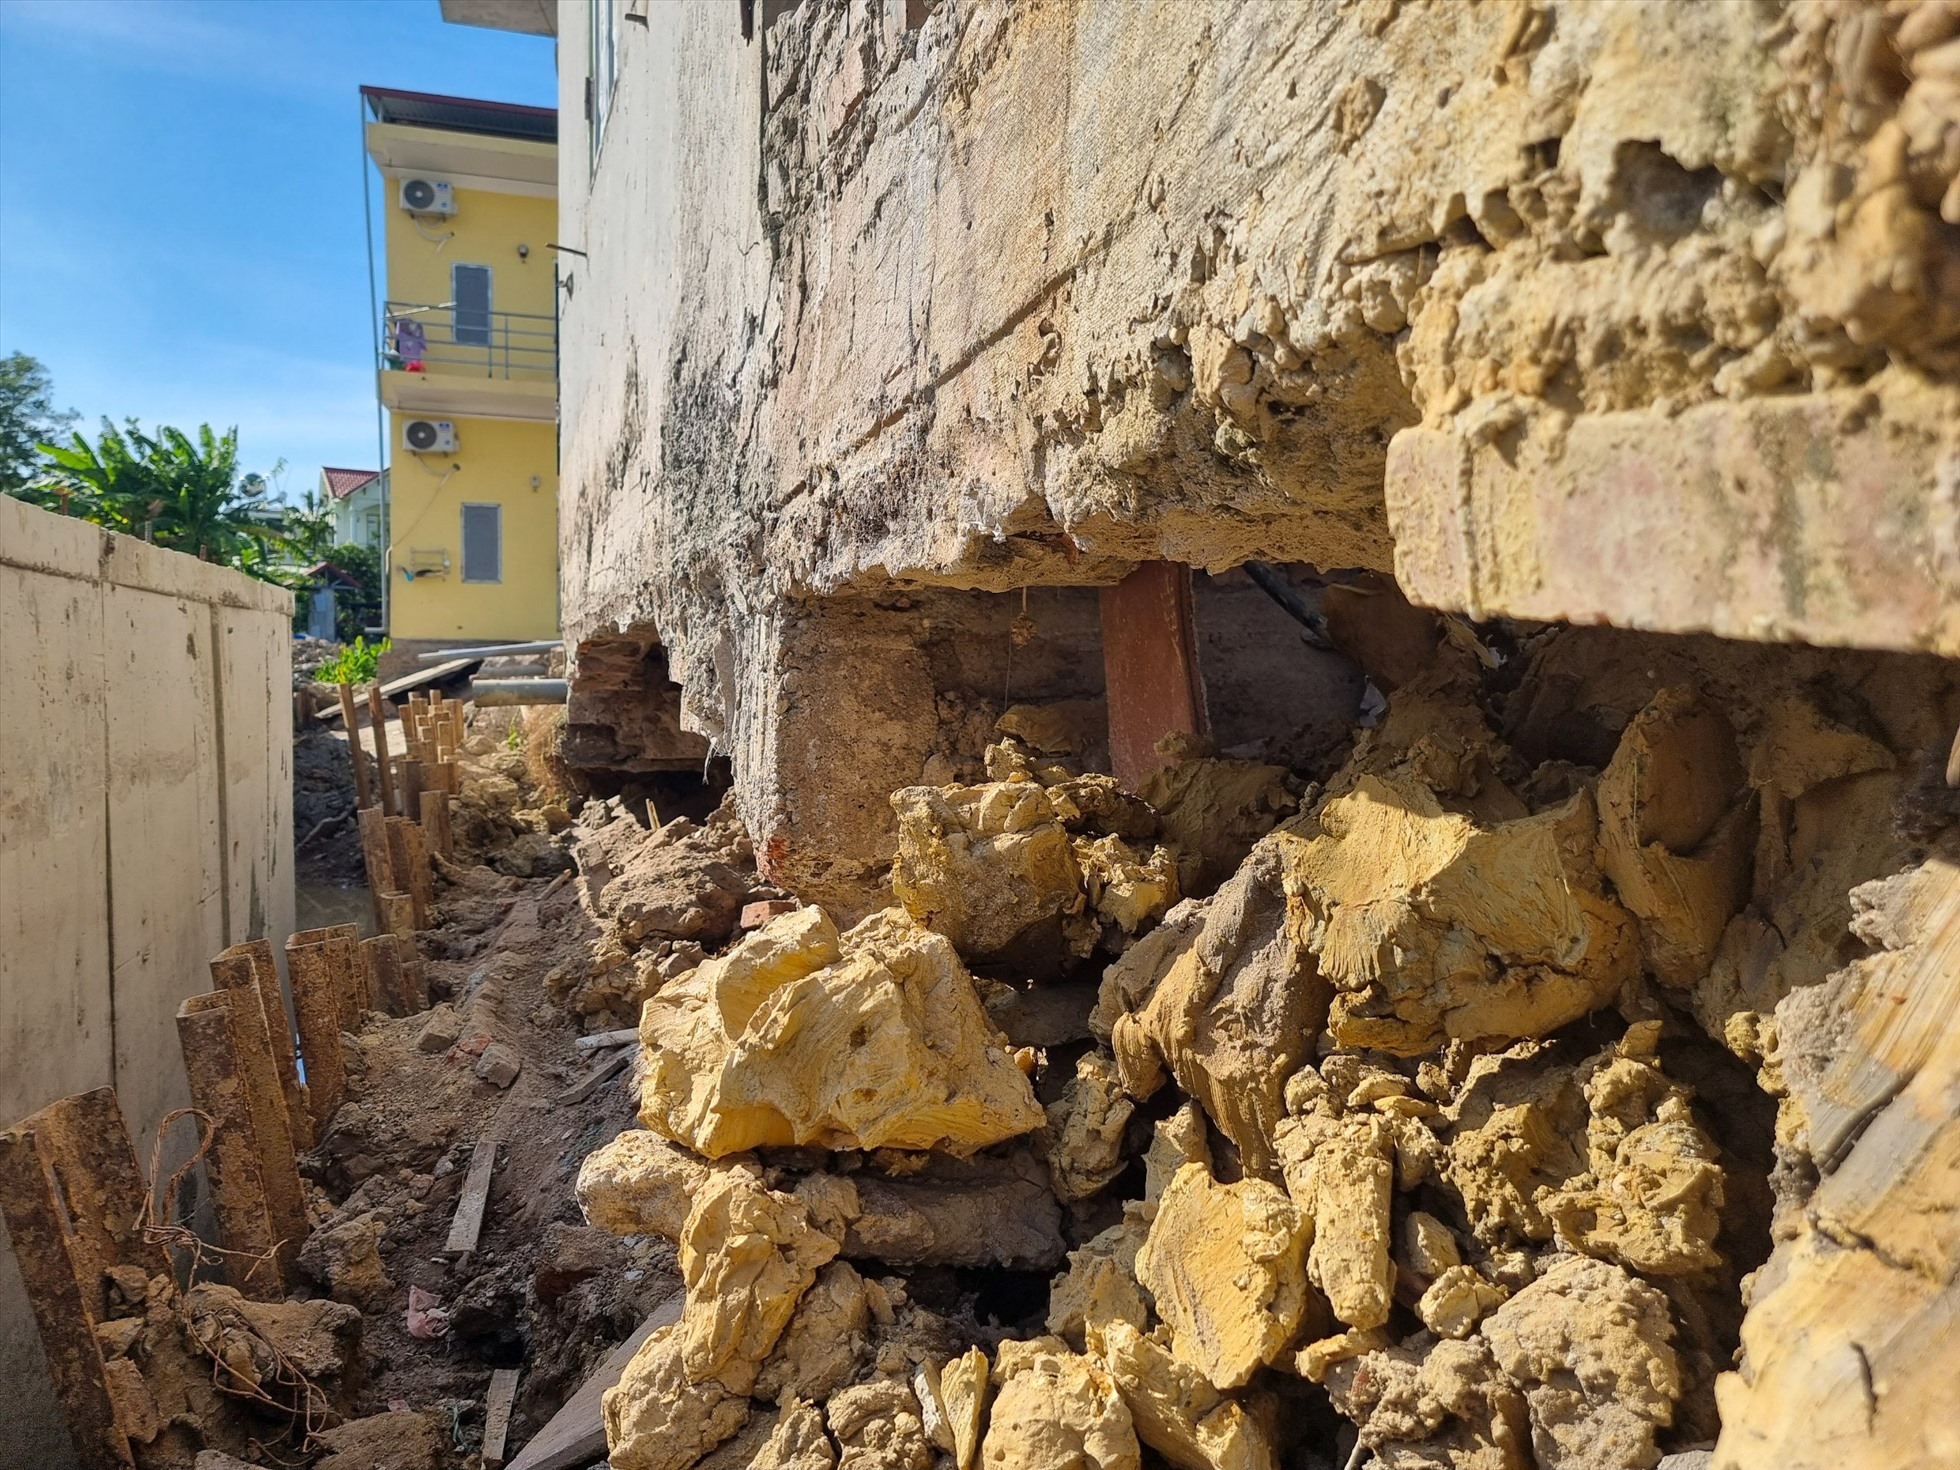 Một công trình nhà ở bị sụt lún khiến hở móng nhà có thể dẫn tới nguy cơ đổ sập.